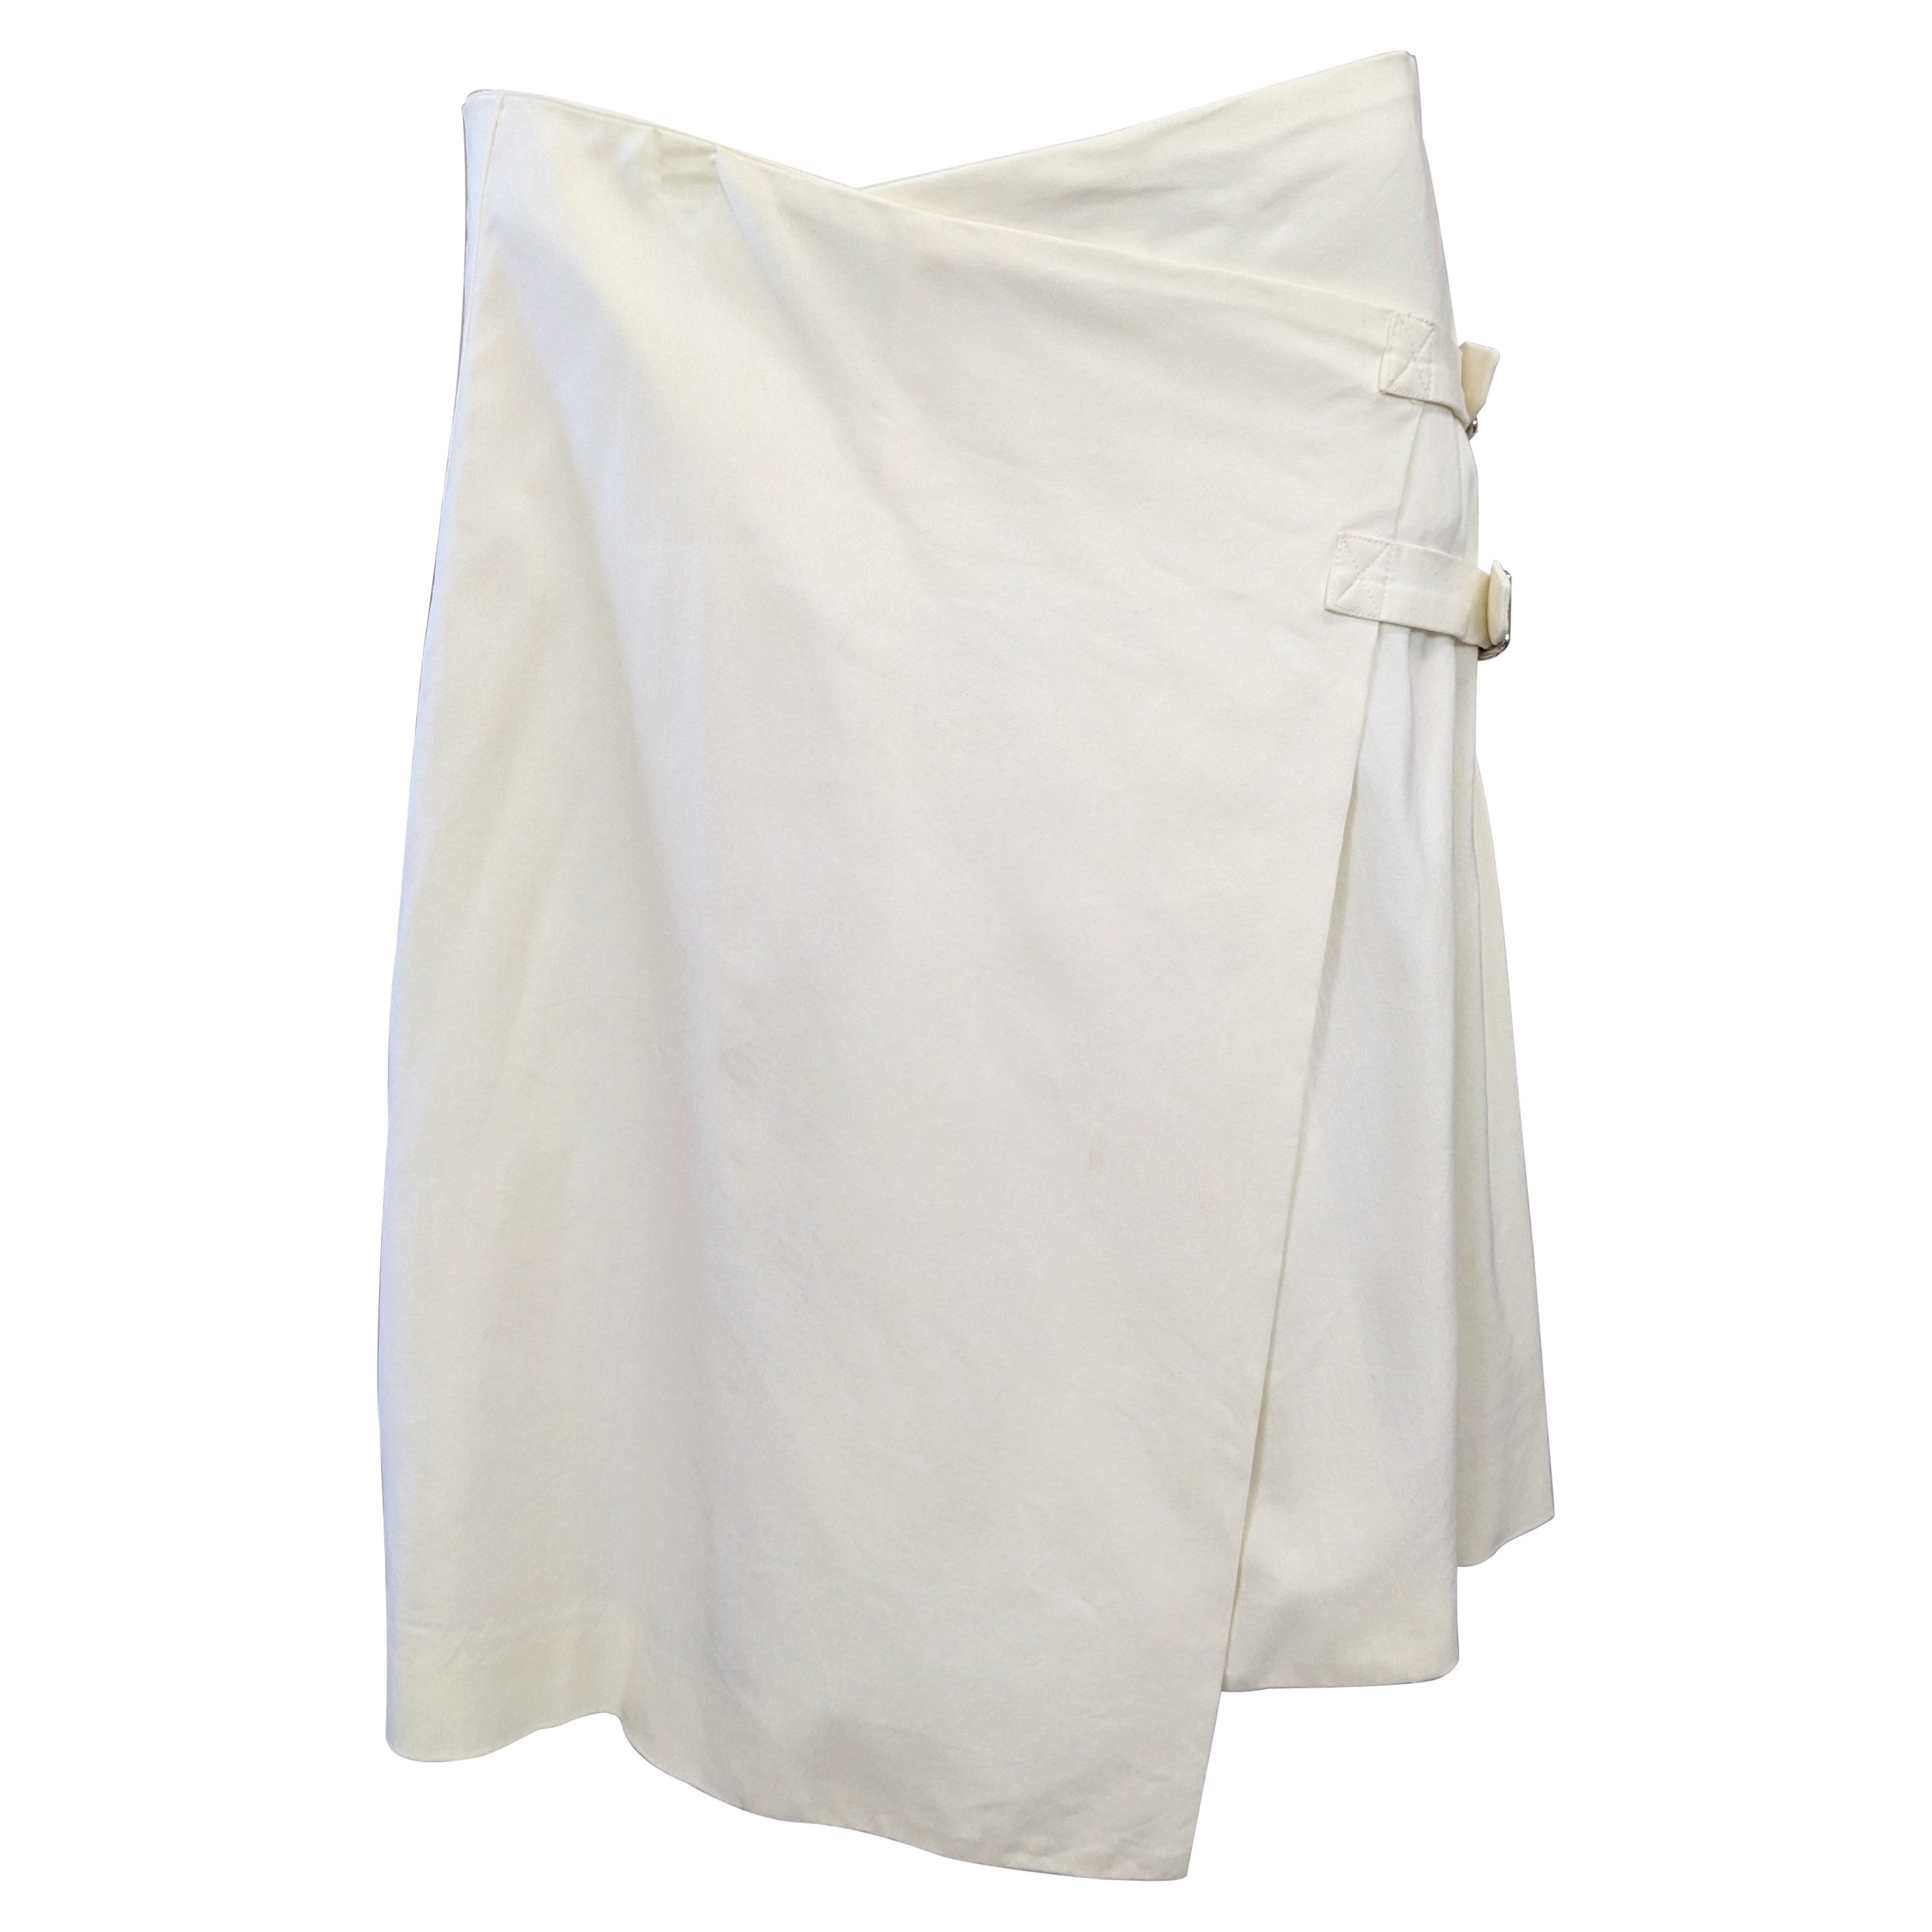 John Galliano Spring/Summer 2000 Asymmetrical Wrap Kilt Skirt